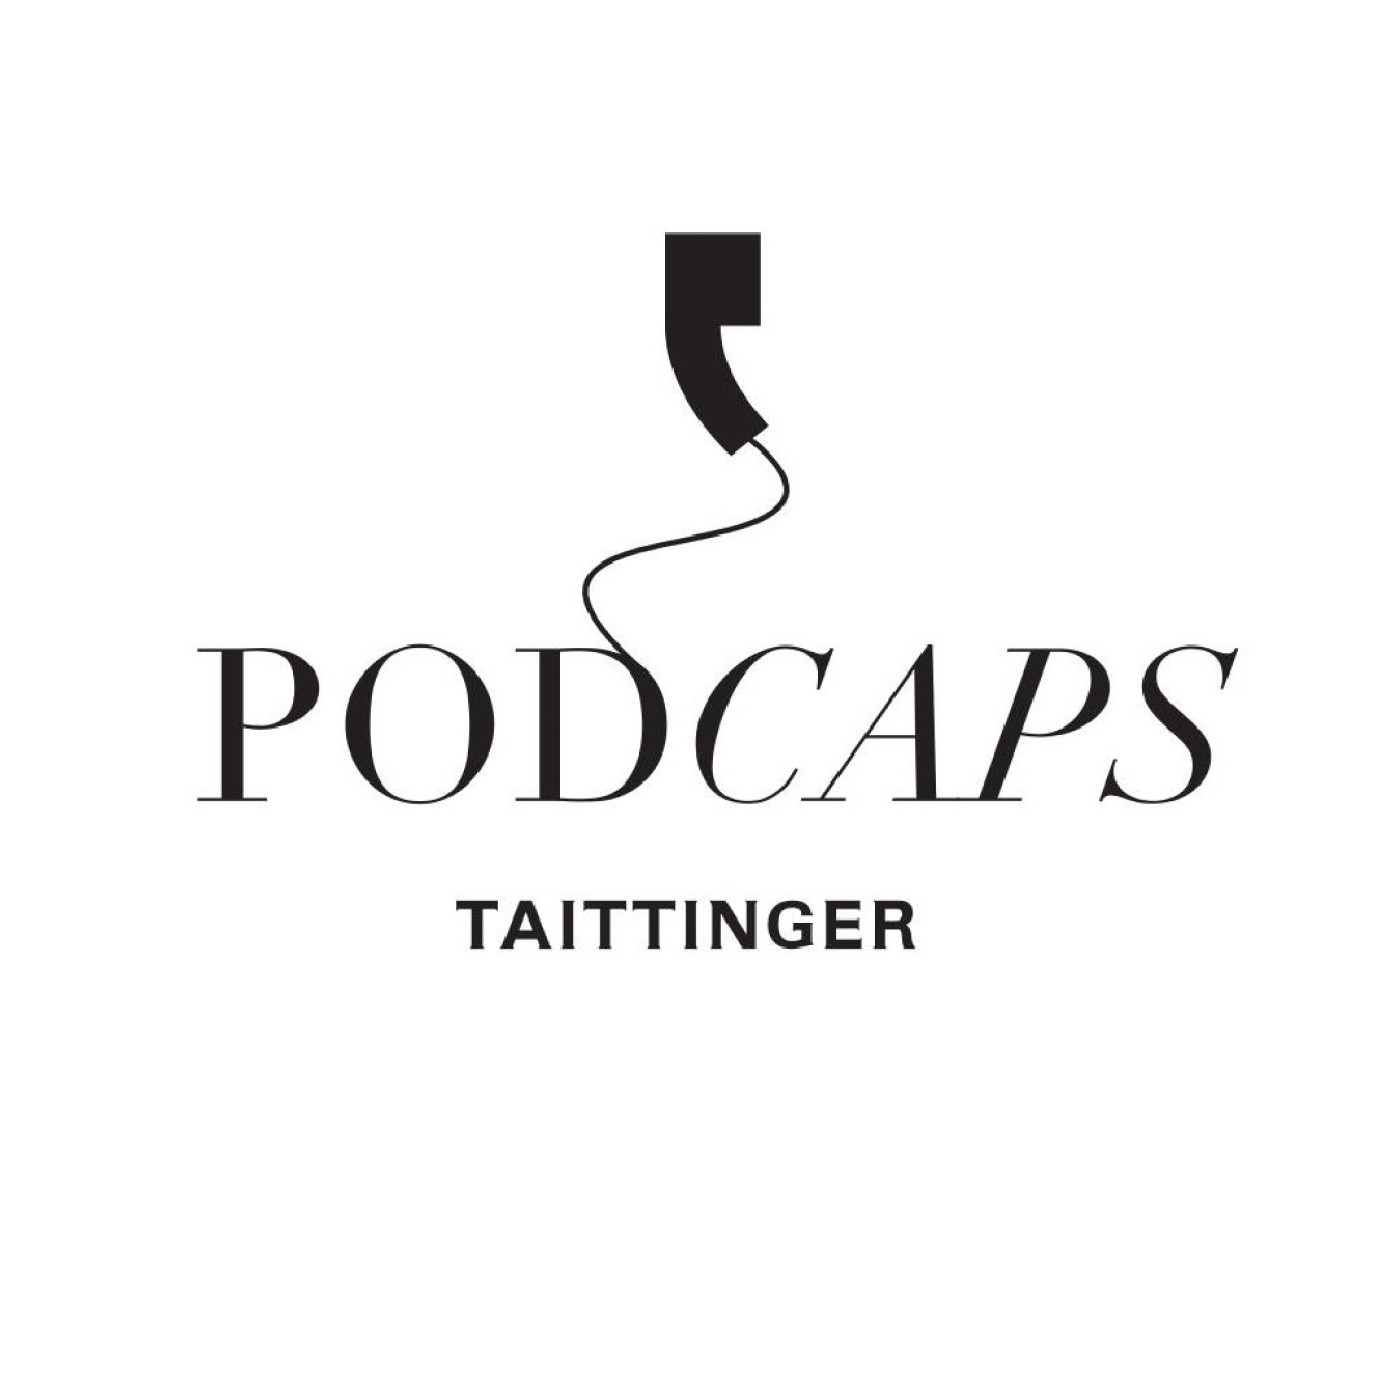 Podcaps Taittinger : Vitalie Taittinger, President of Champagne Taittinger